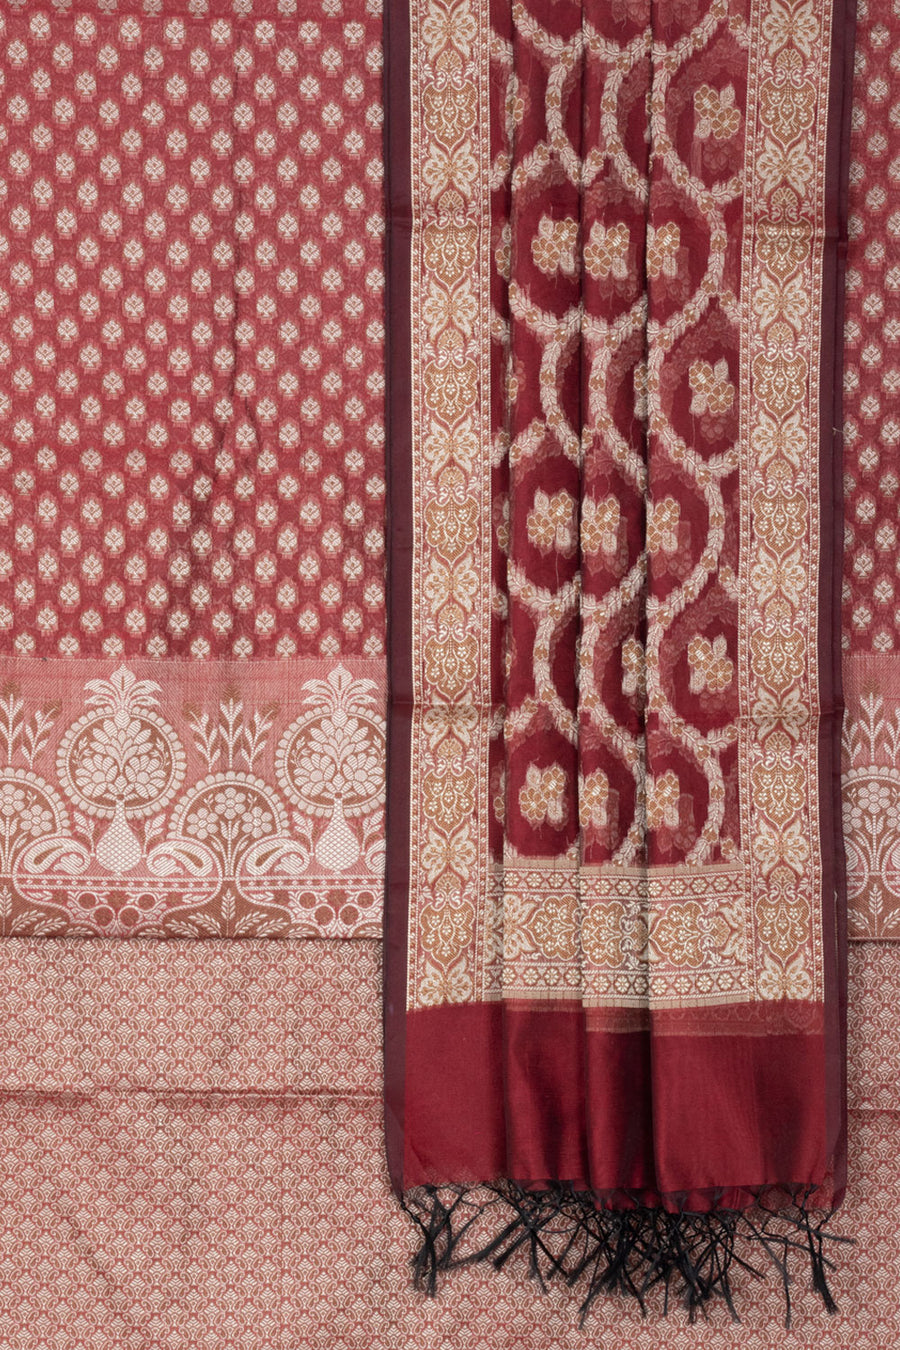 Banarasi Katrua Cotton 3-Piece Salwar Suit Material with Floral Motifs and tassels in Dupatta